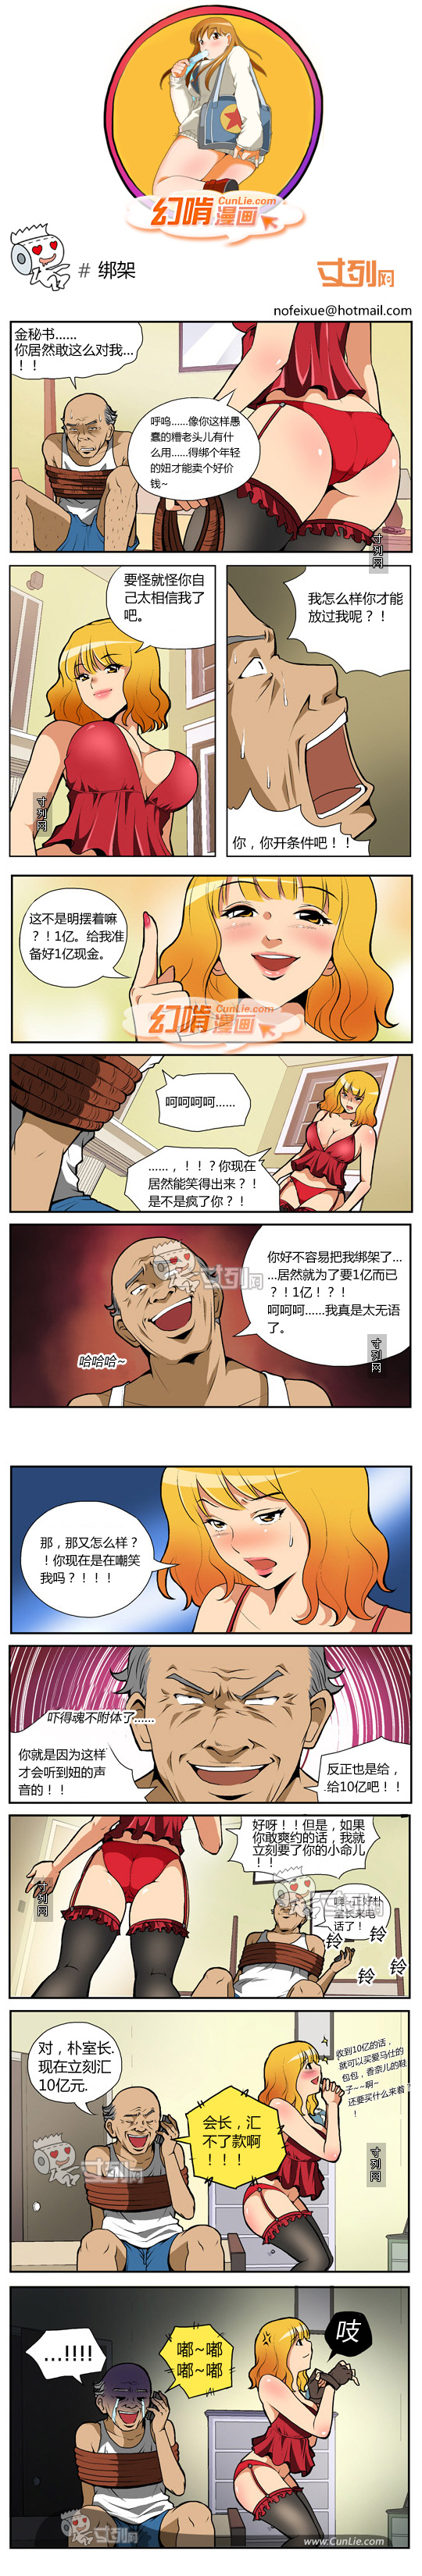 幻啃漫画绑架